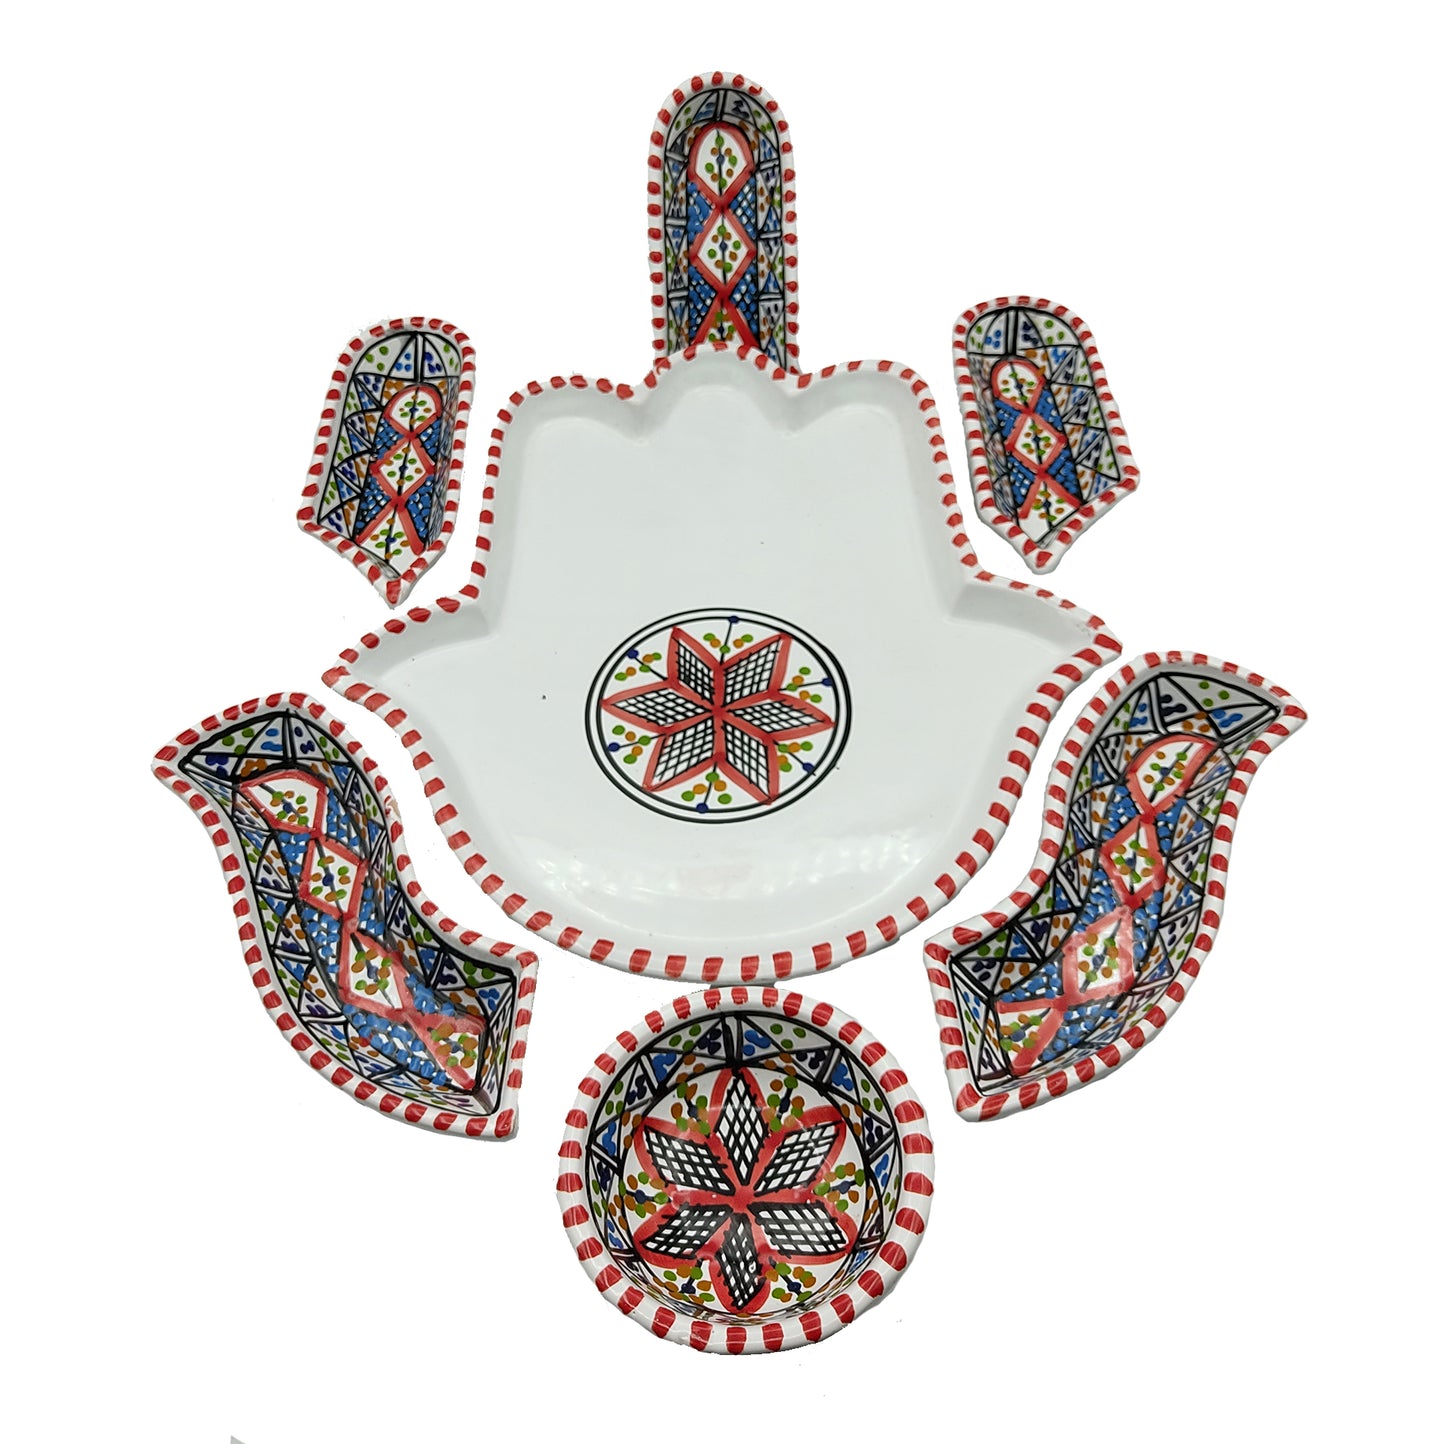 Antipastiera Piatto Etnico Ceramica Terracotta Tunisina Marocchina 2611201212